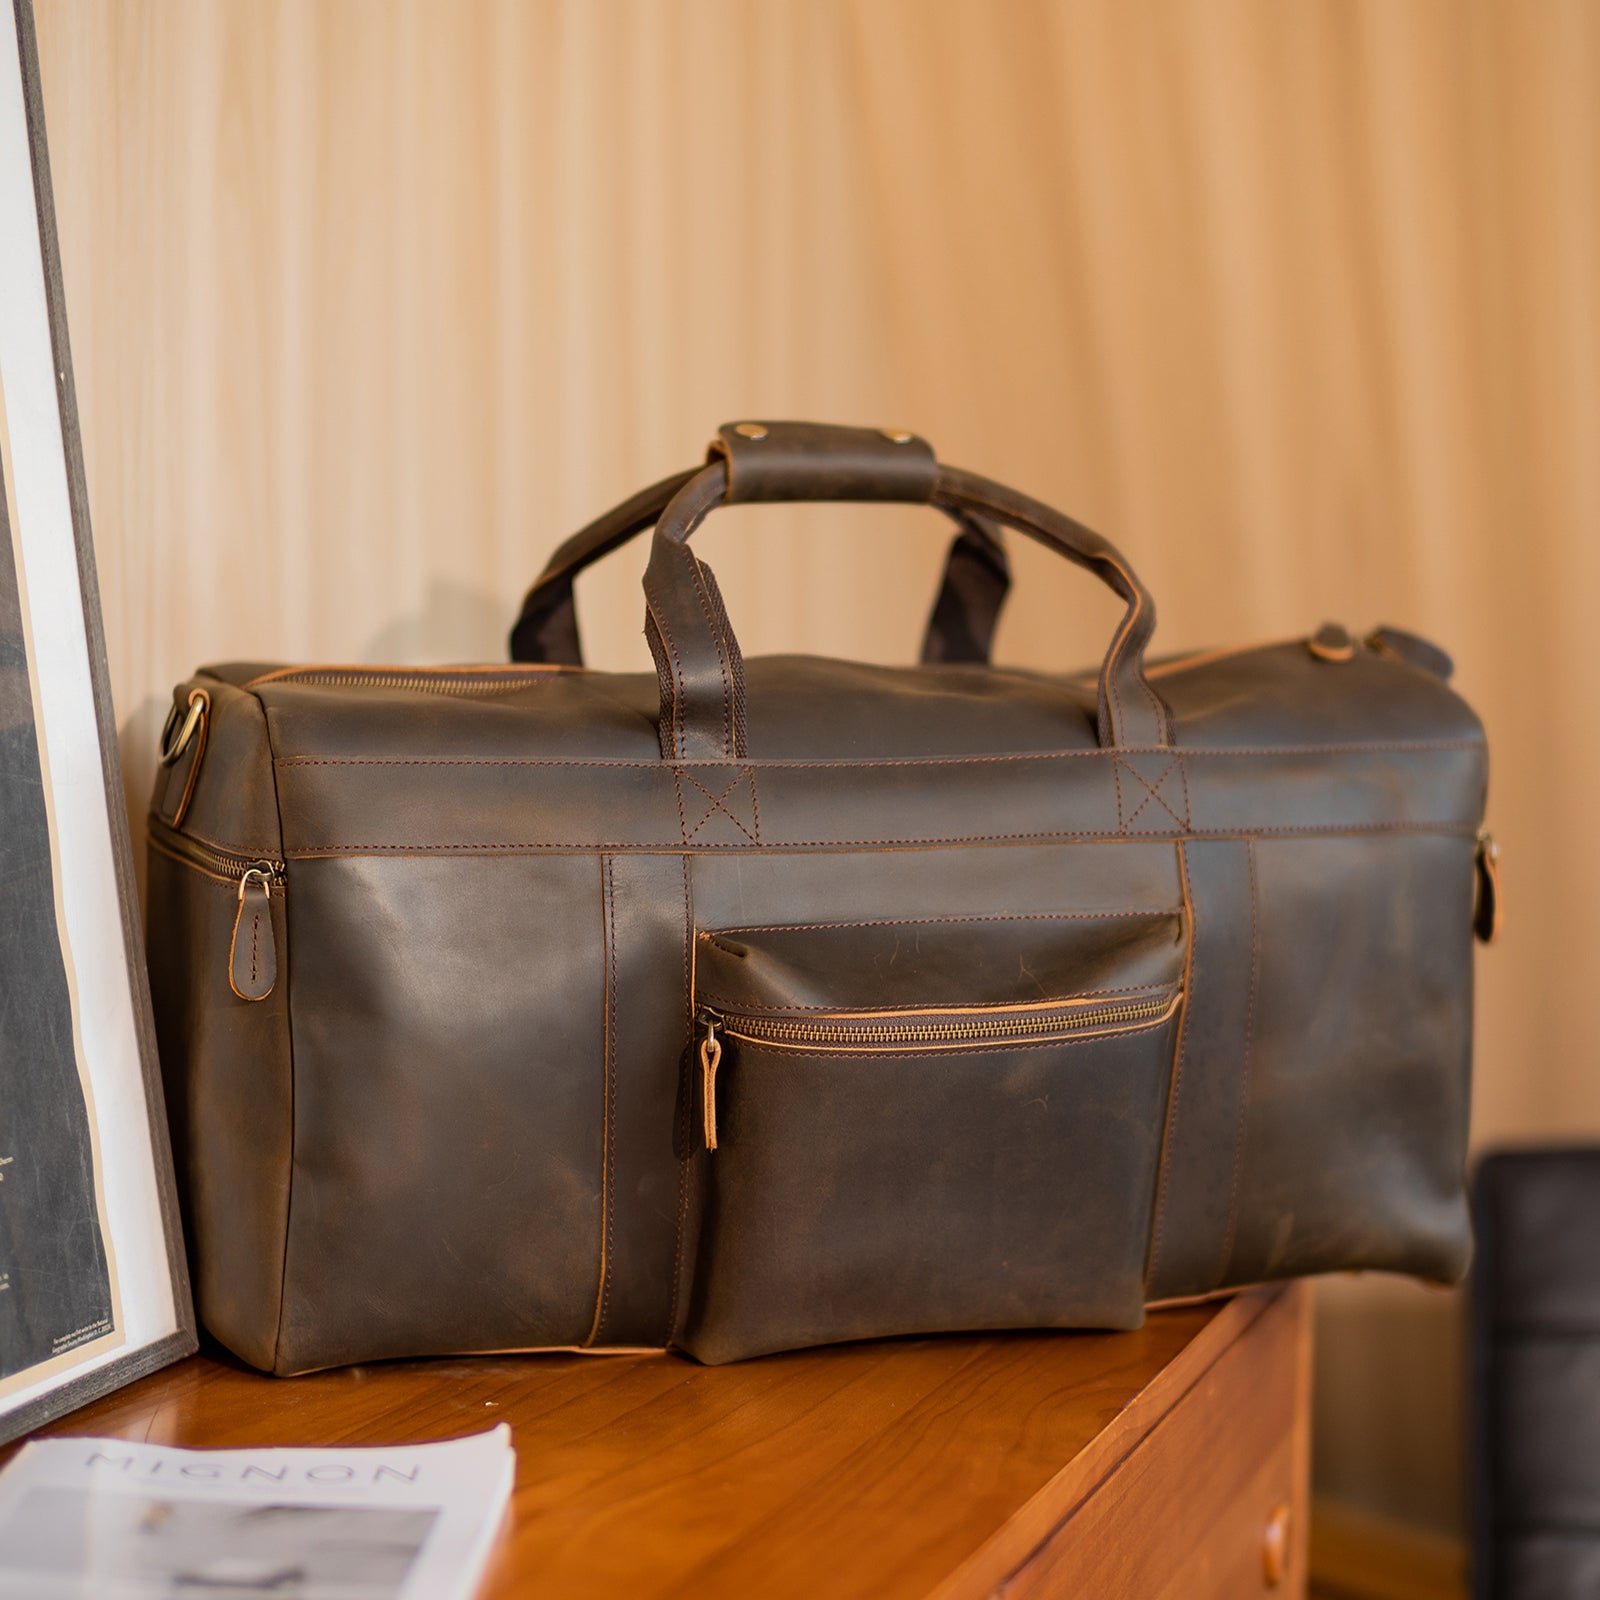 Large Leather Travel Duffle Bag 82003 – Unity Refresh